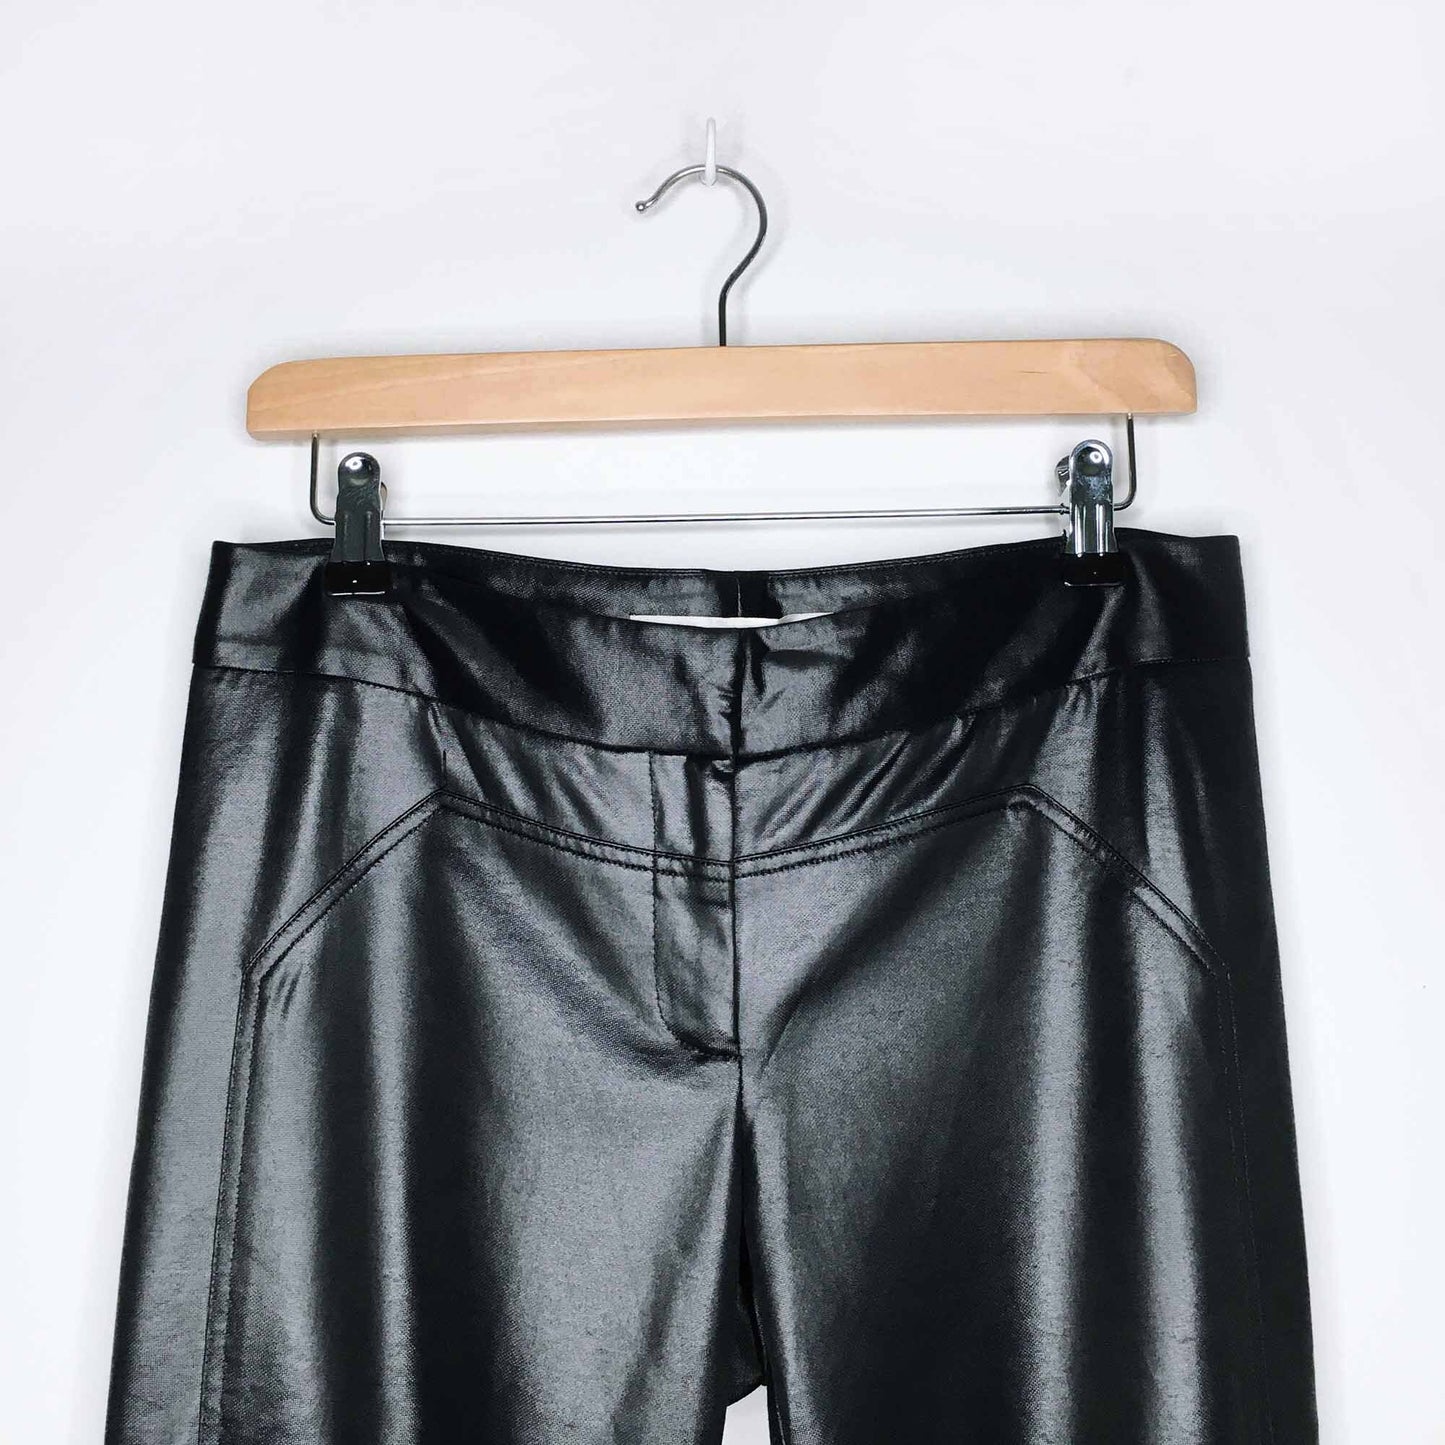 Diane von Furstenberg liquid slim pants - size 6